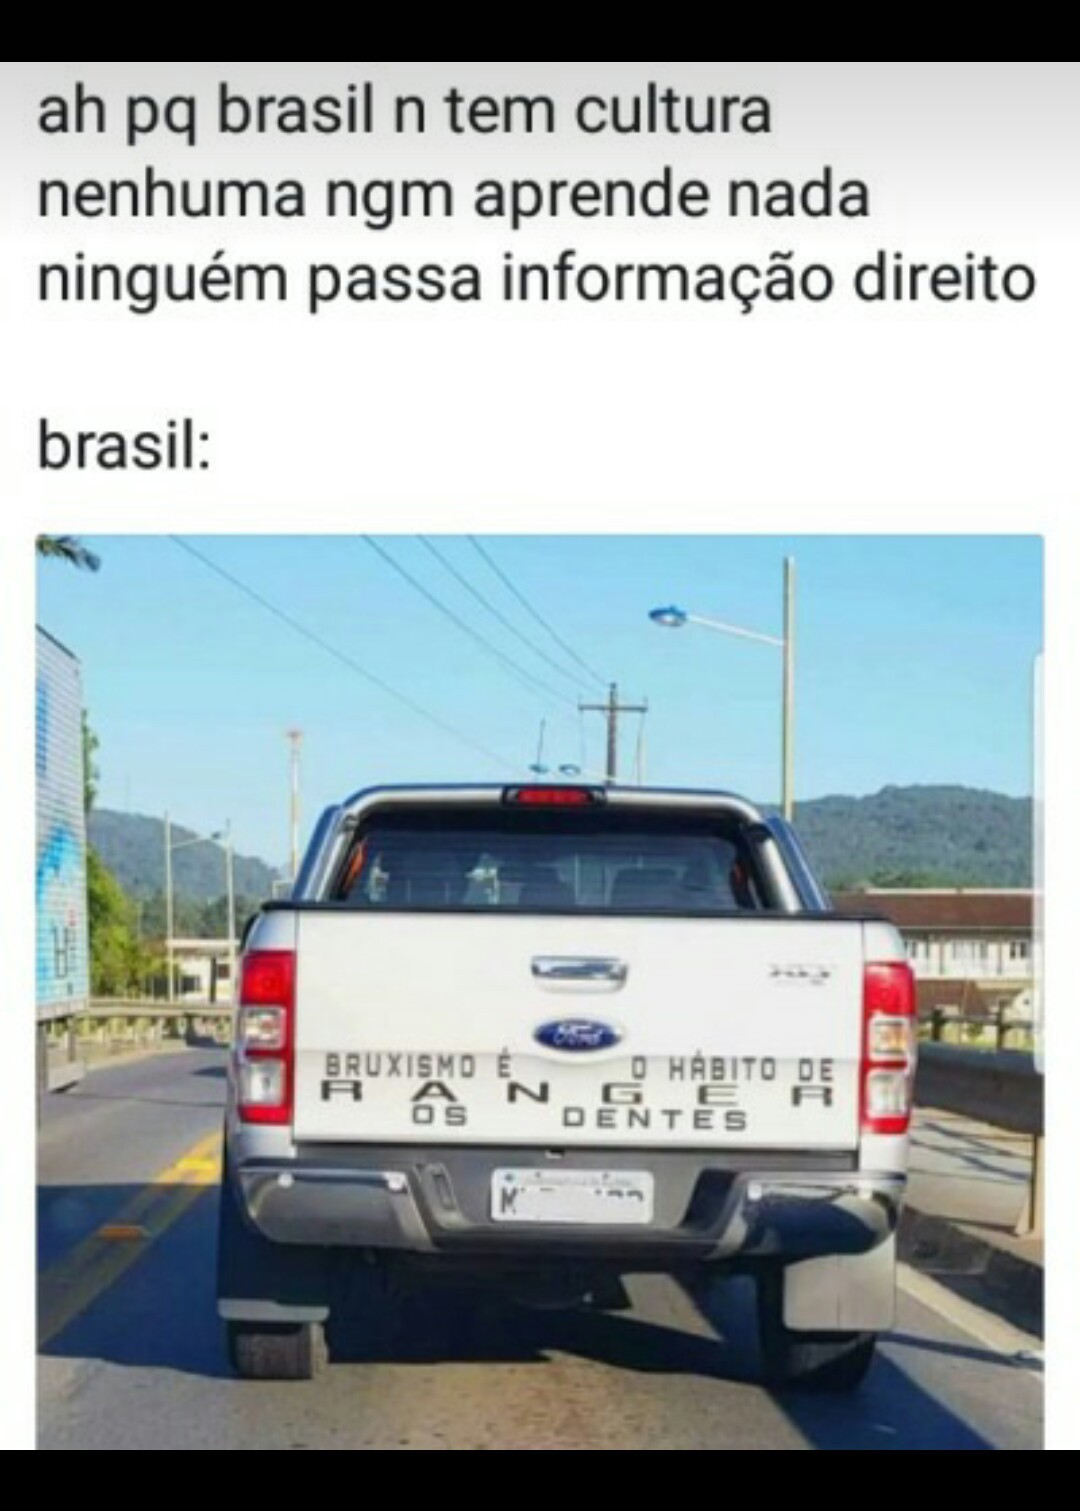 Brasileiro sendo brasileiro - meme